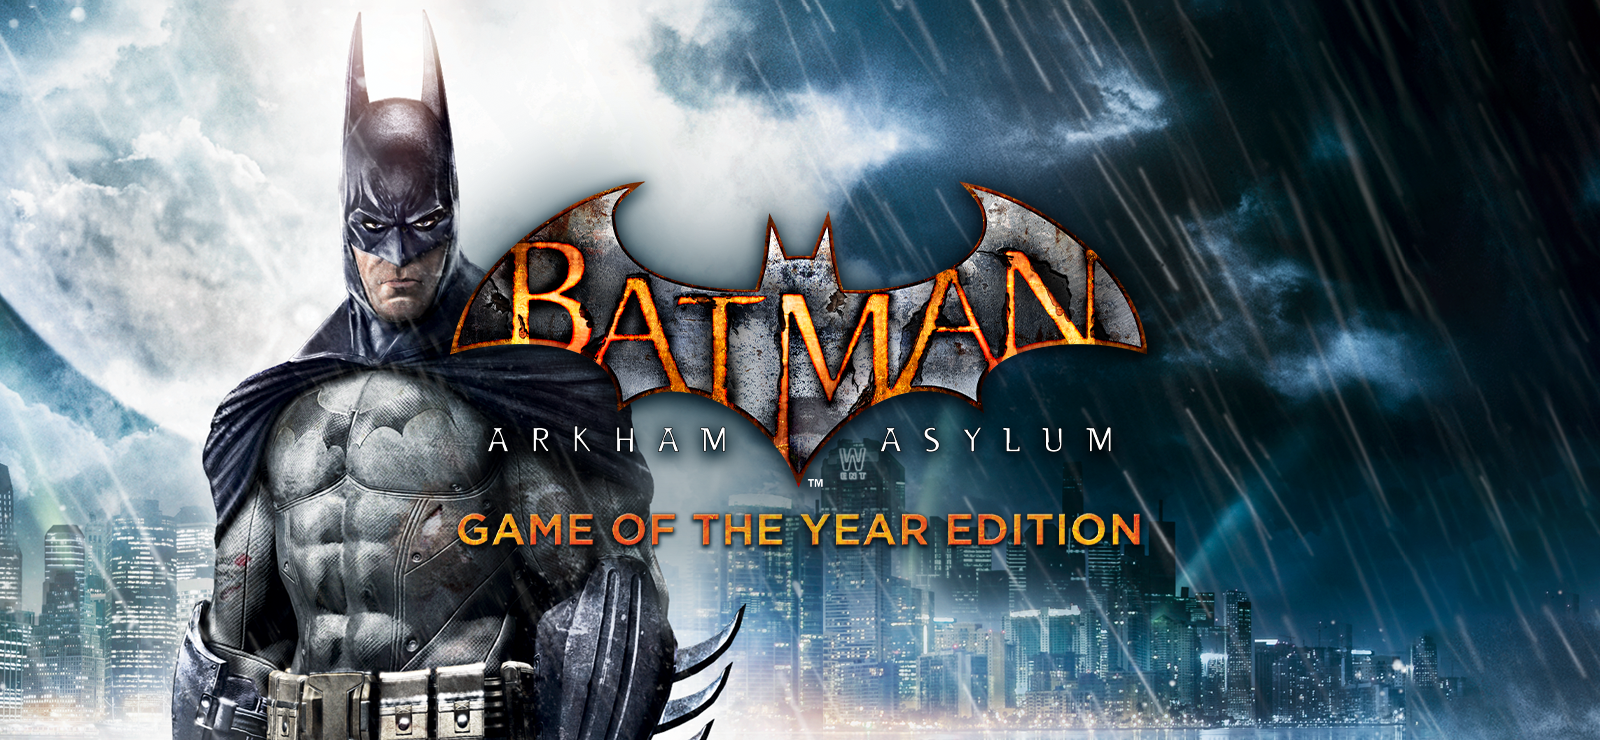 Freeflow Bronze achievement in Batman: Arkham Asylum